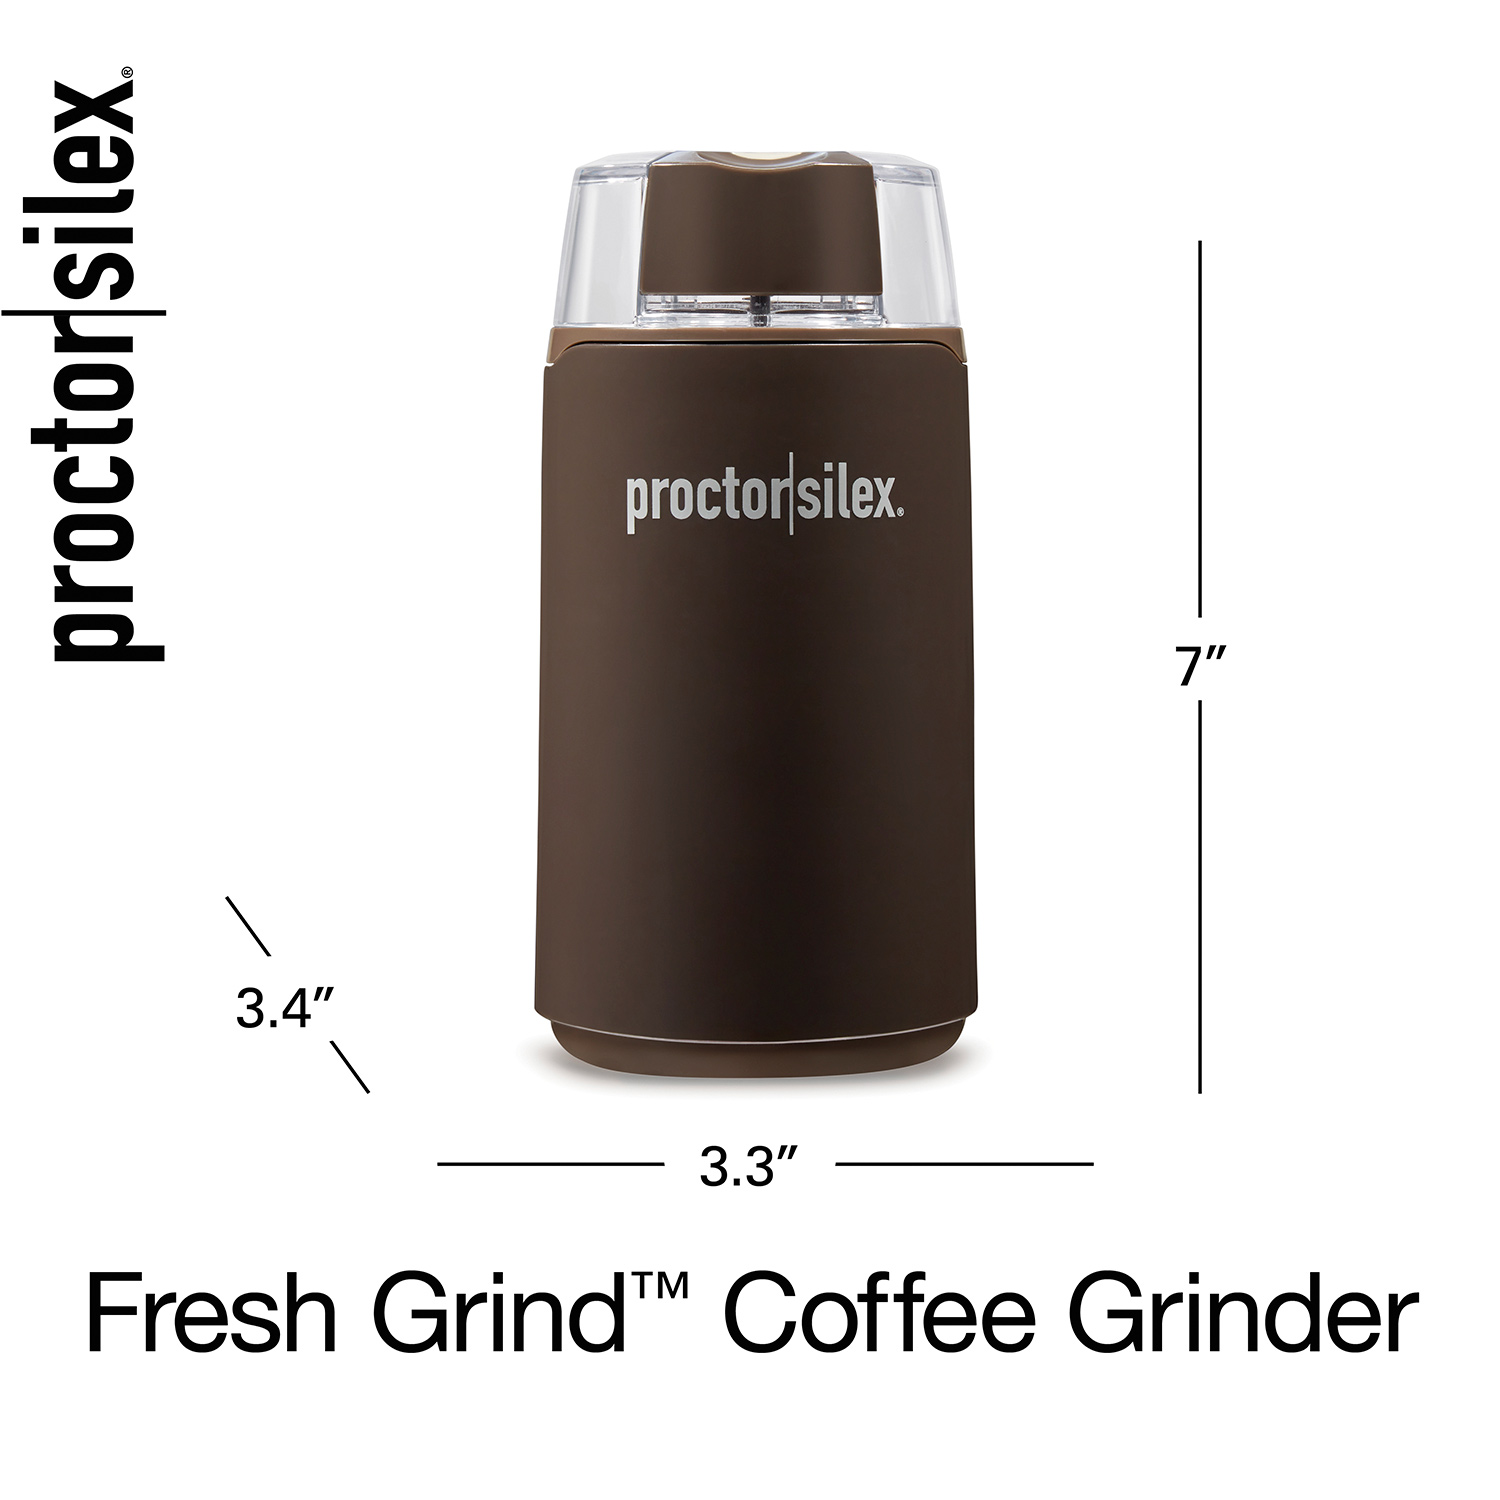 Proctor Silex, Other, Proctor Silex Fresh Grind Coffee Grinder